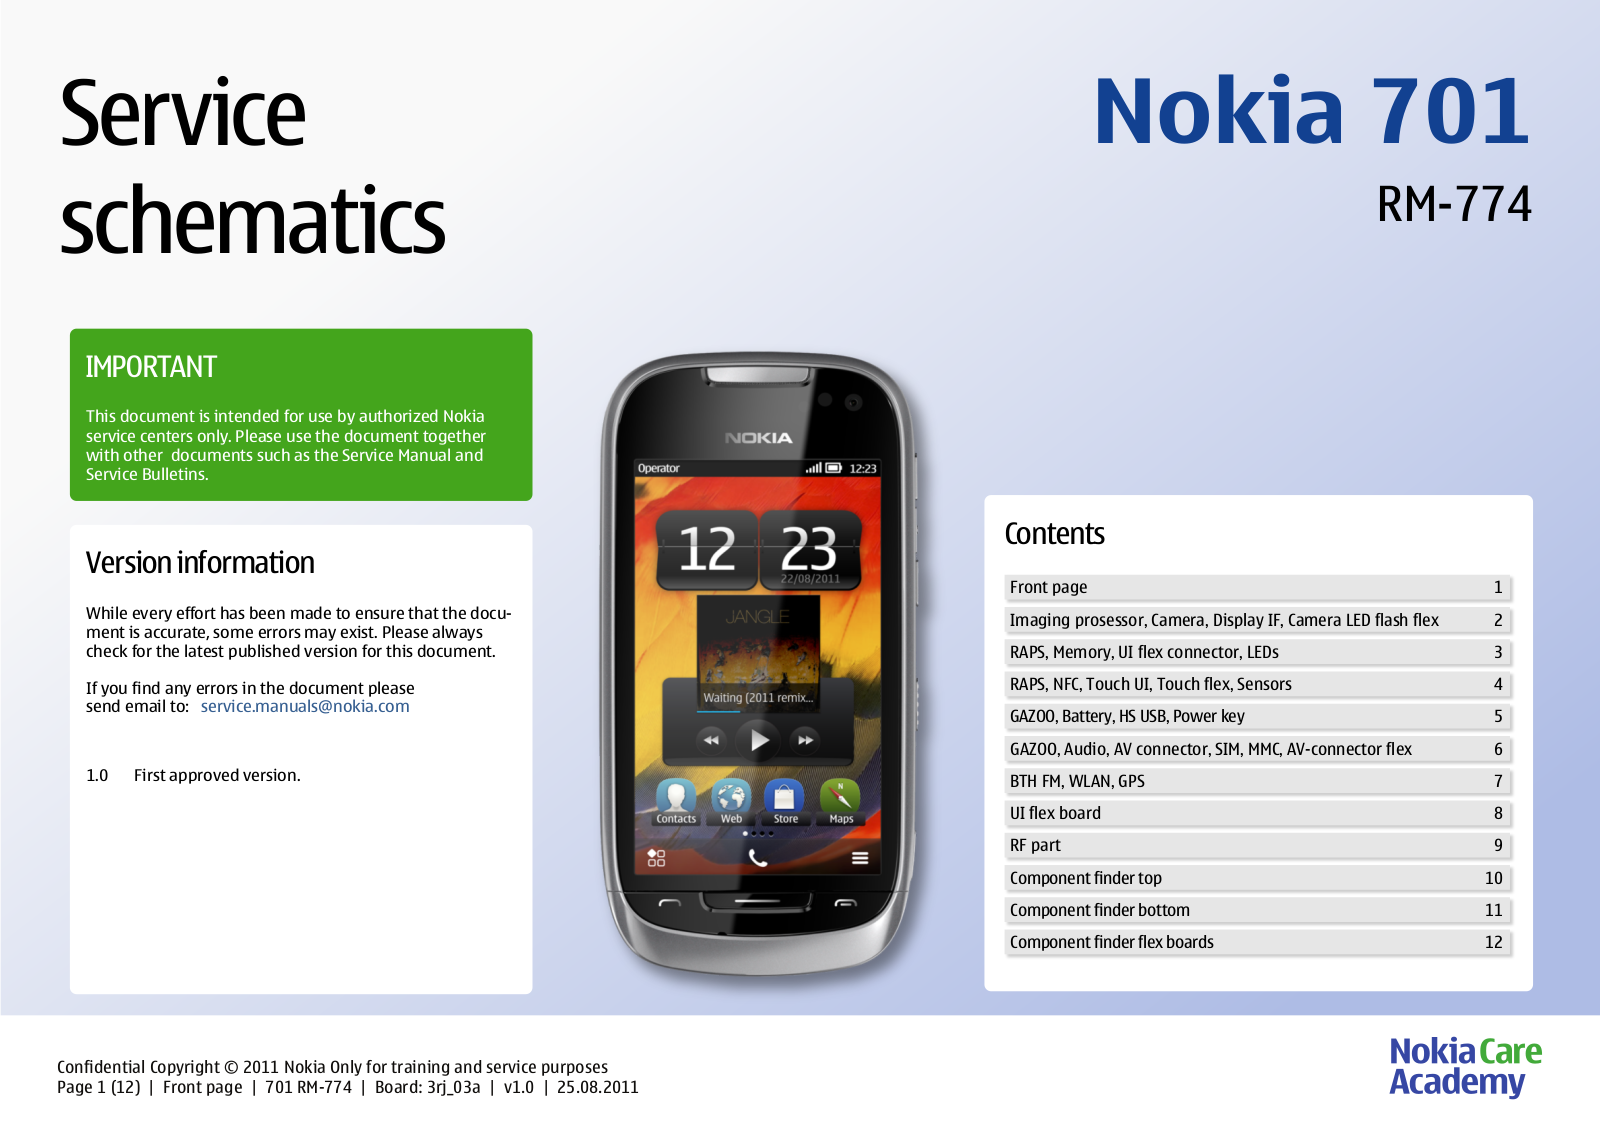 Nokia 701, RM-774 Service Schematics